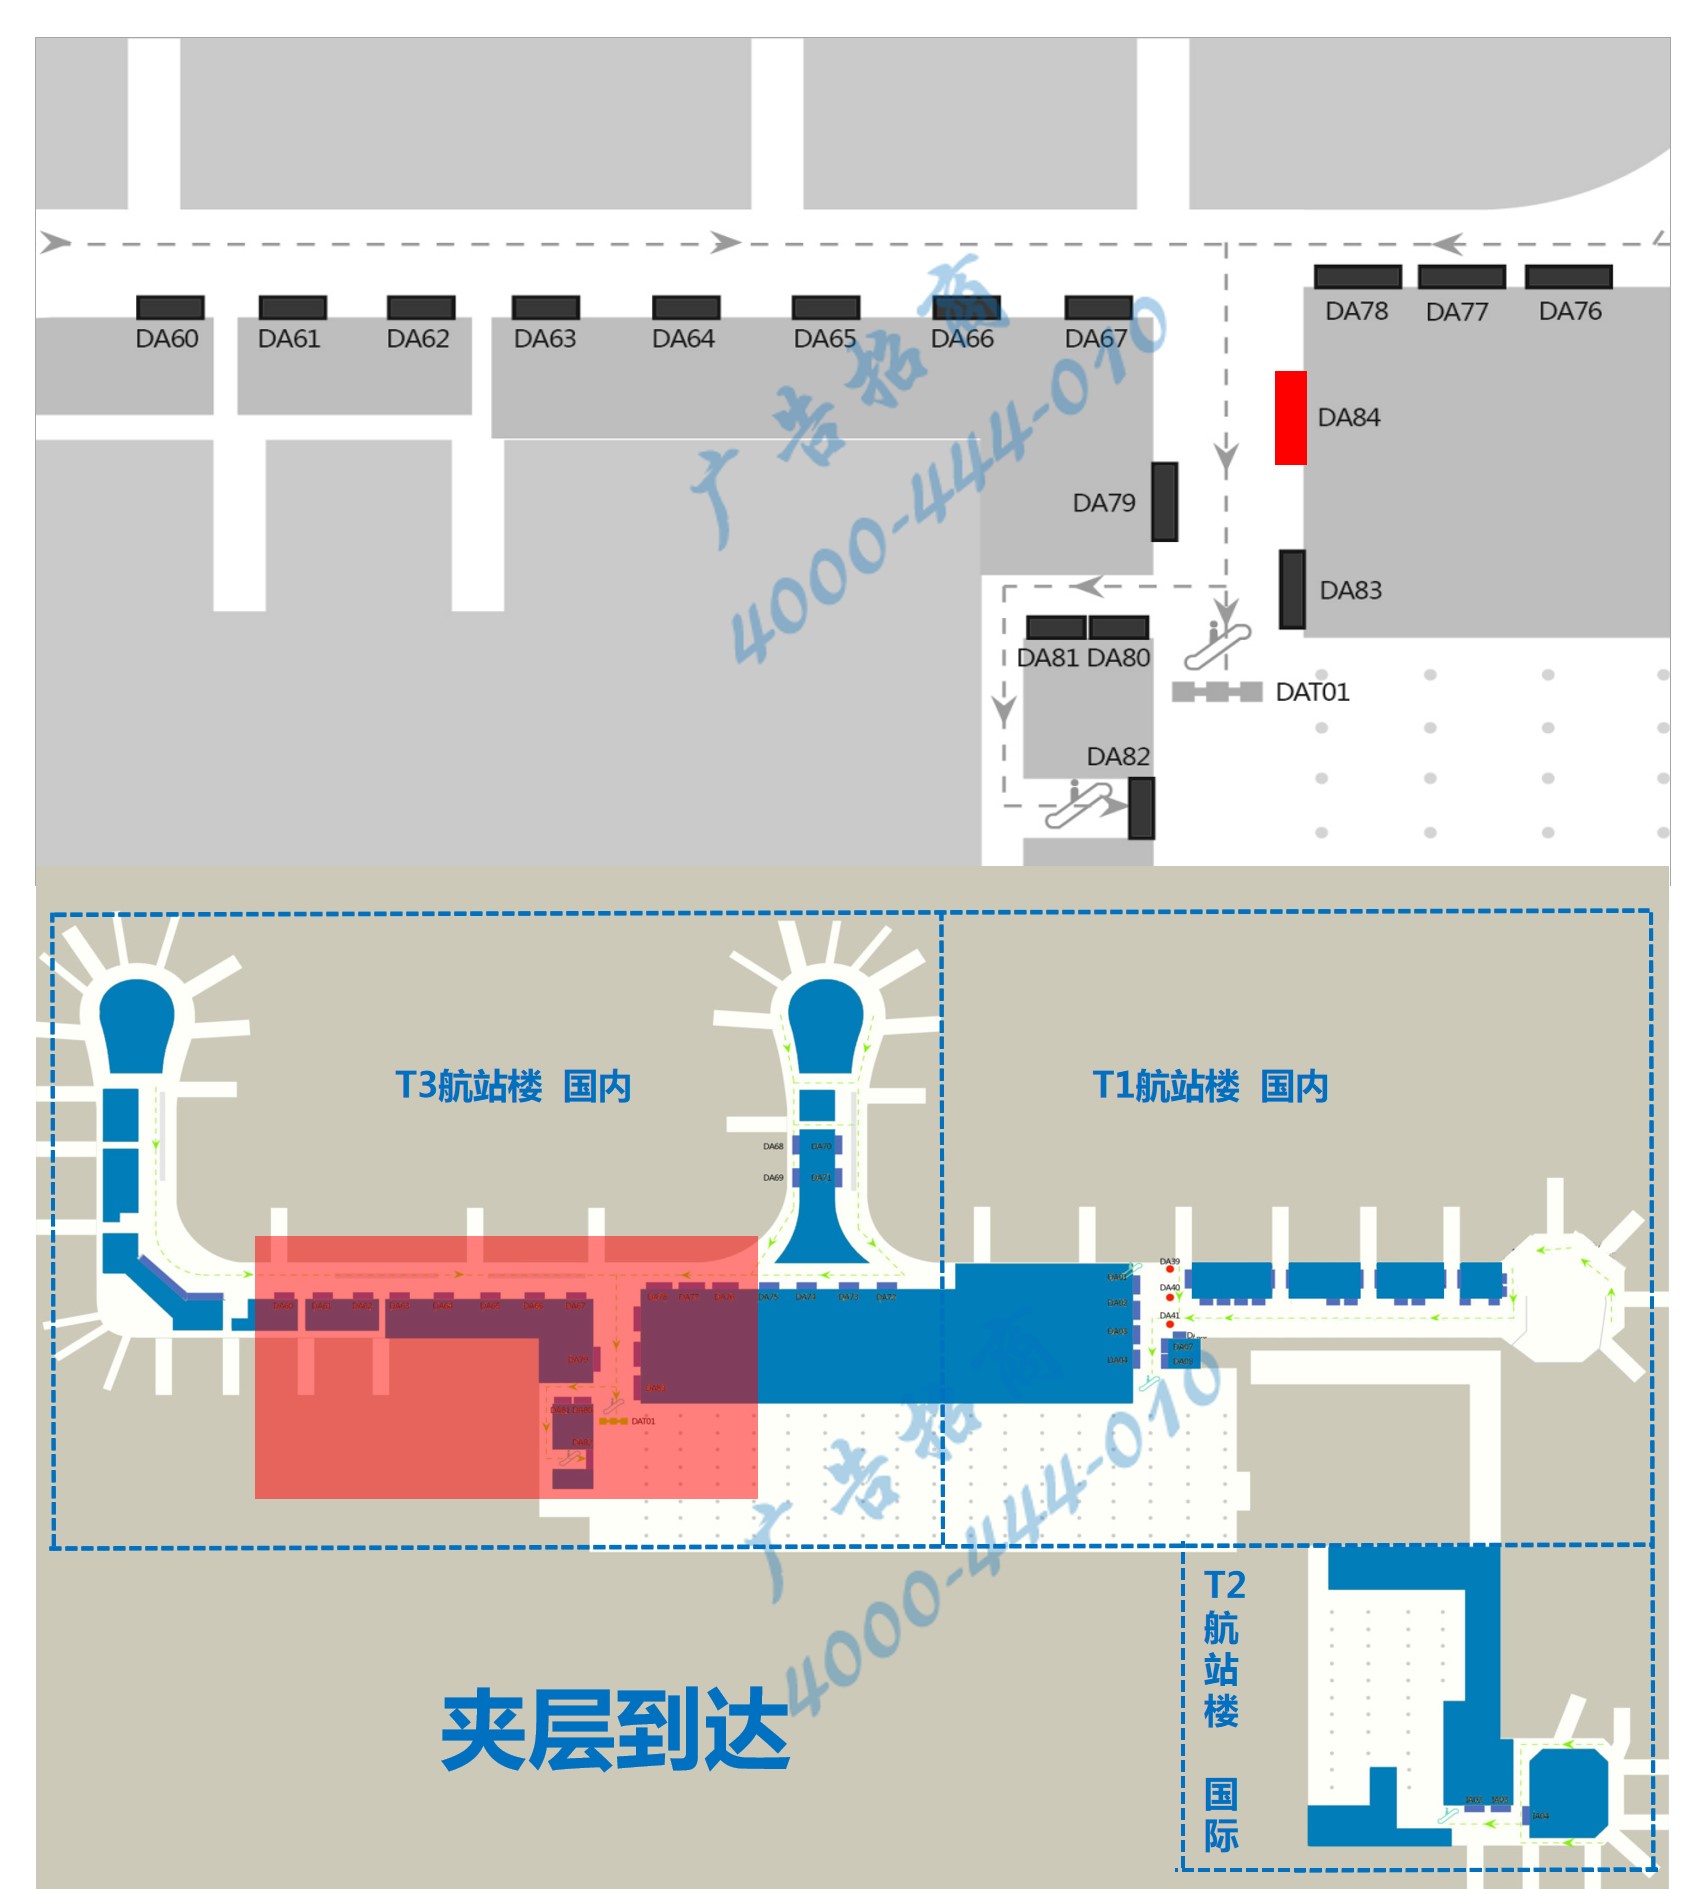 杭州萧山机场广告-T3国内到达夹层汇集口墙体灯箱DA84位置图